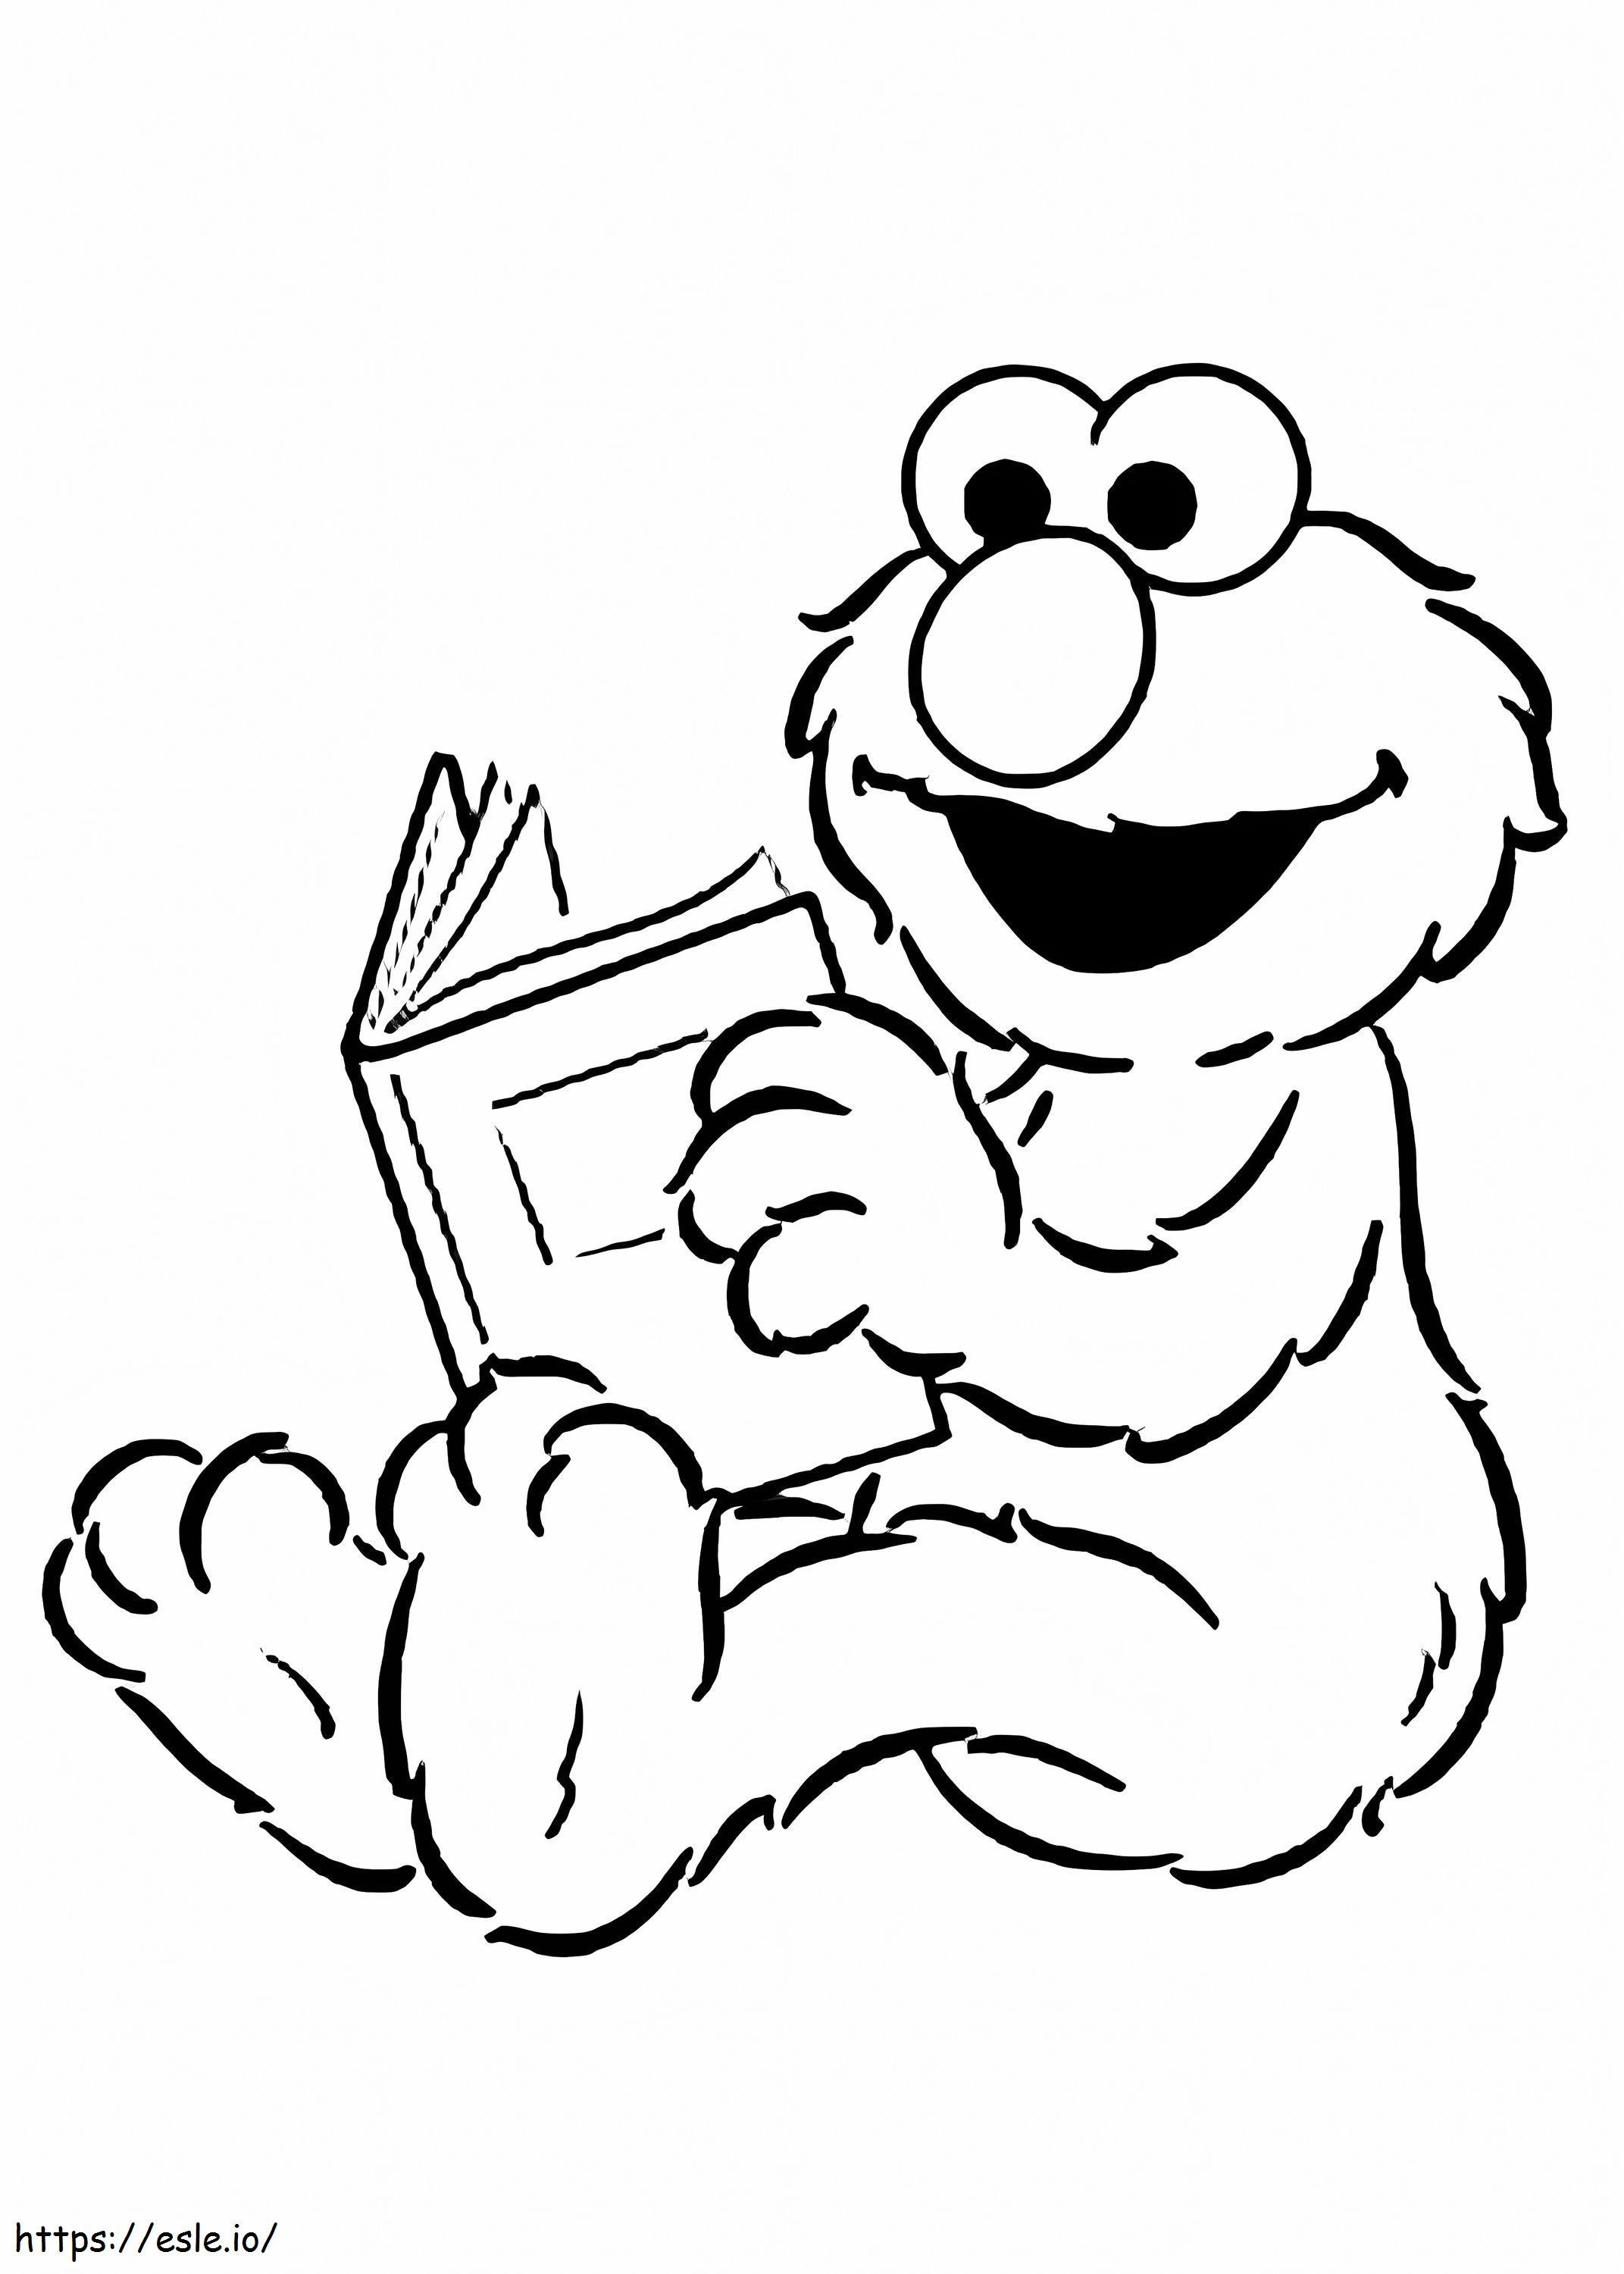 Cartea de lectură a lui Elmo de colorat